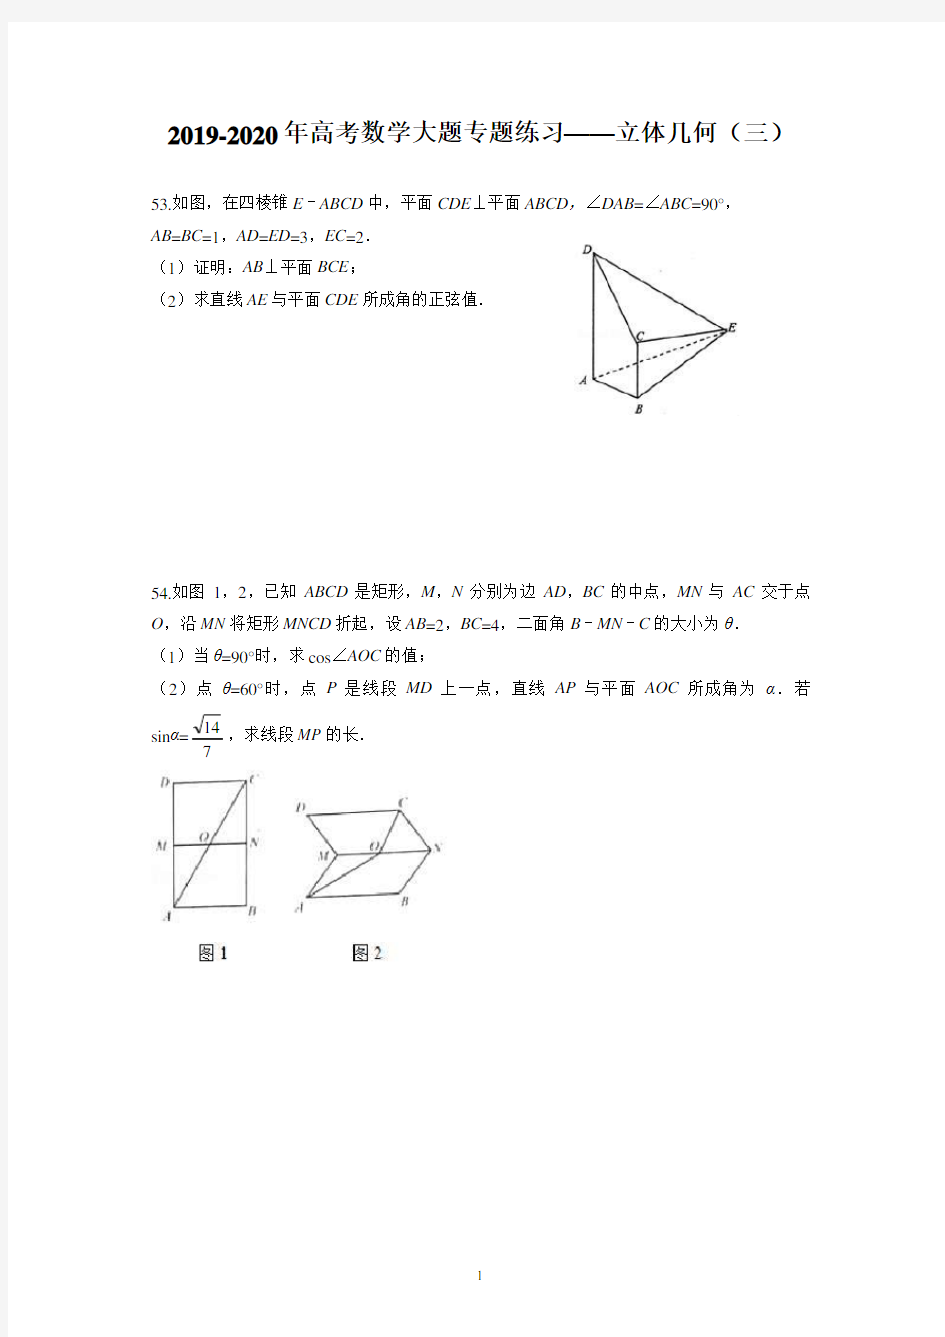 (完整)2019-2020年高考数学大题专题练习——立体几何(三)